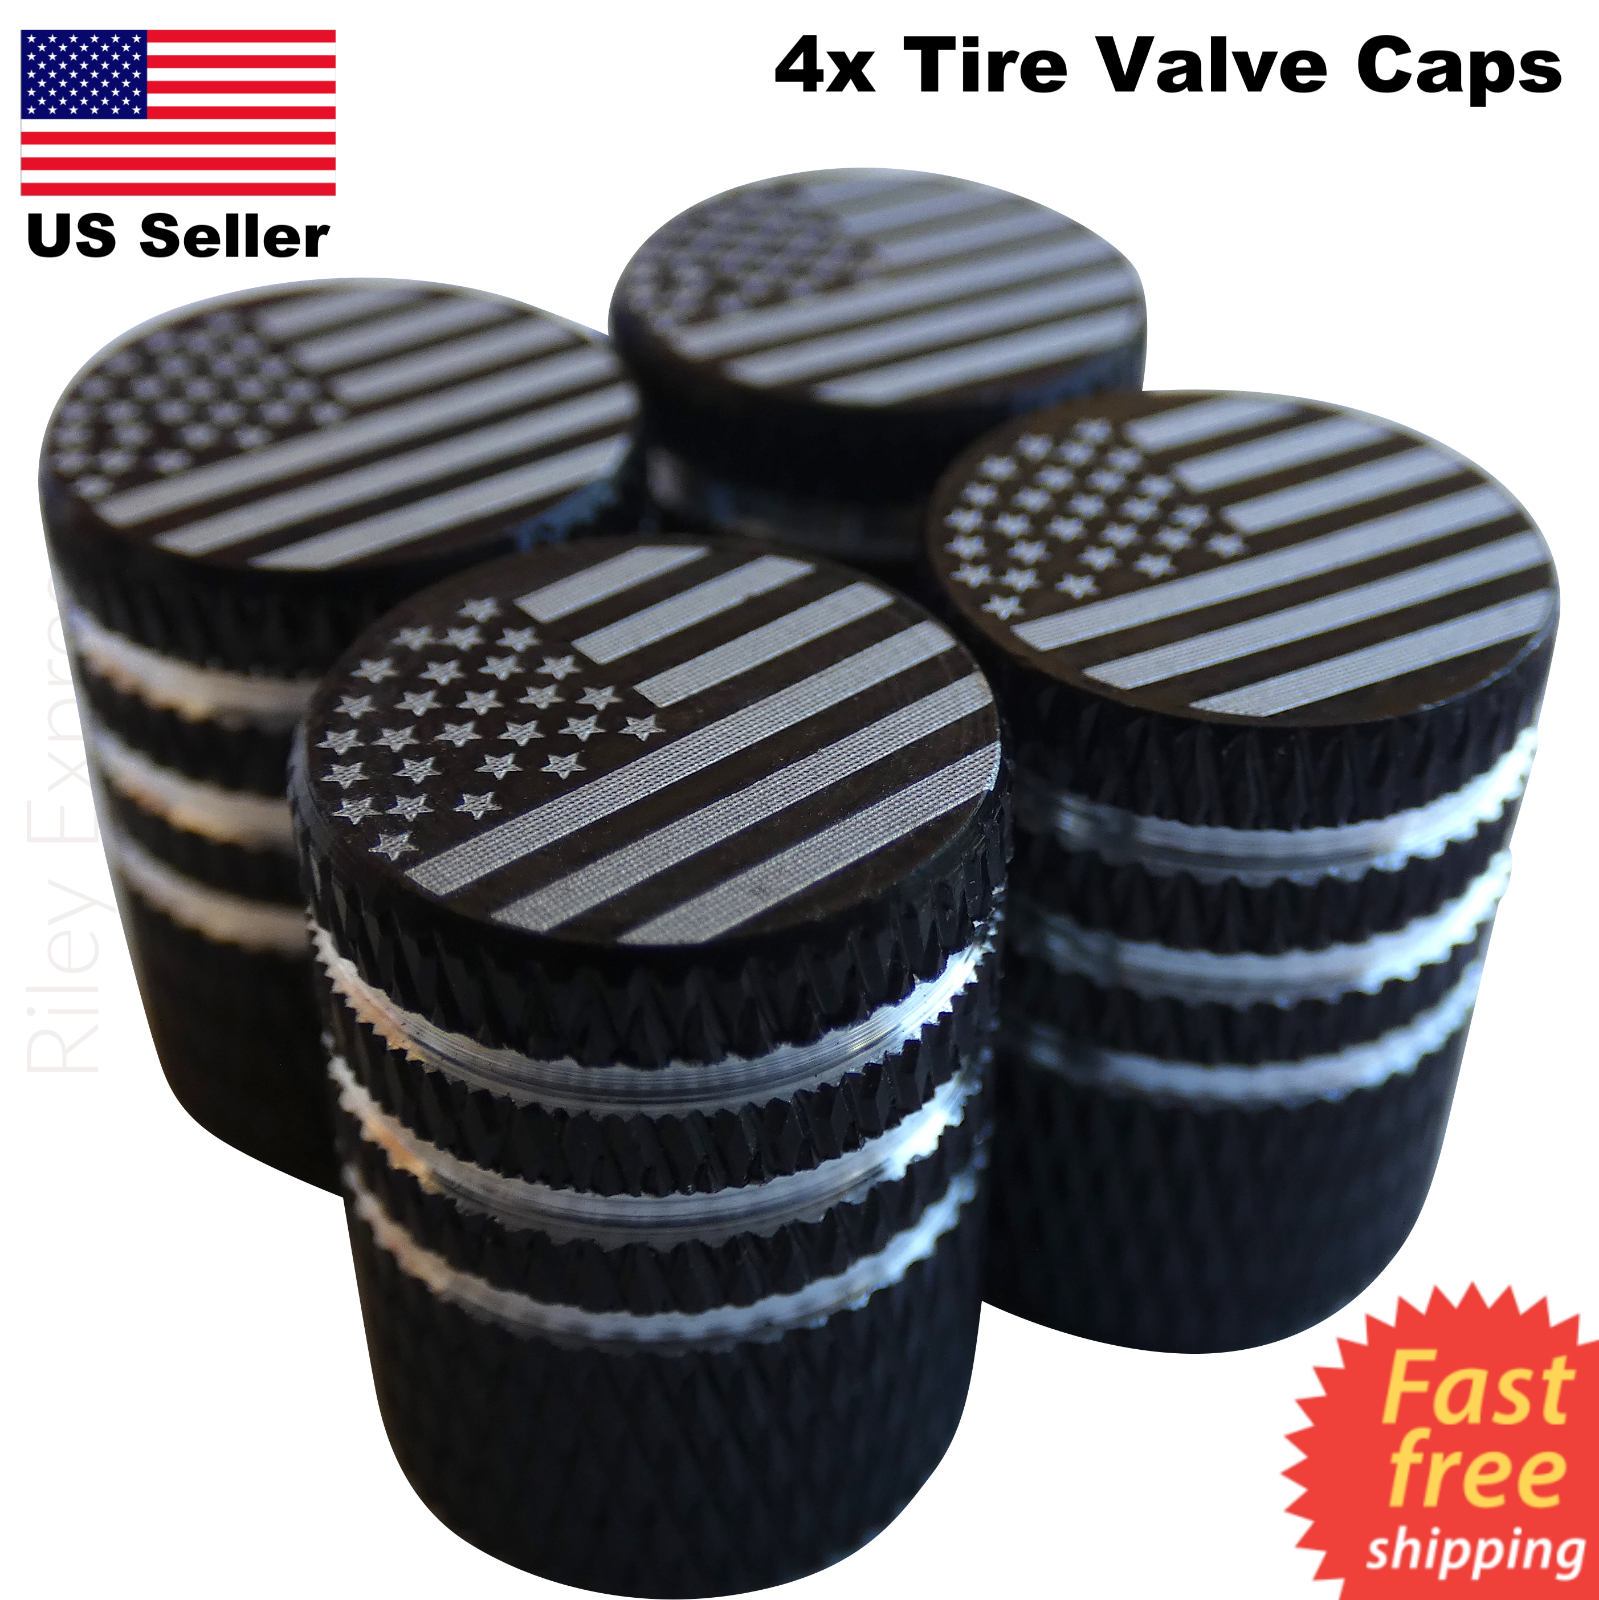 4x Wheel Tire Valve Cap Stem Cover For Bike, Car, Trucks American Flag Black